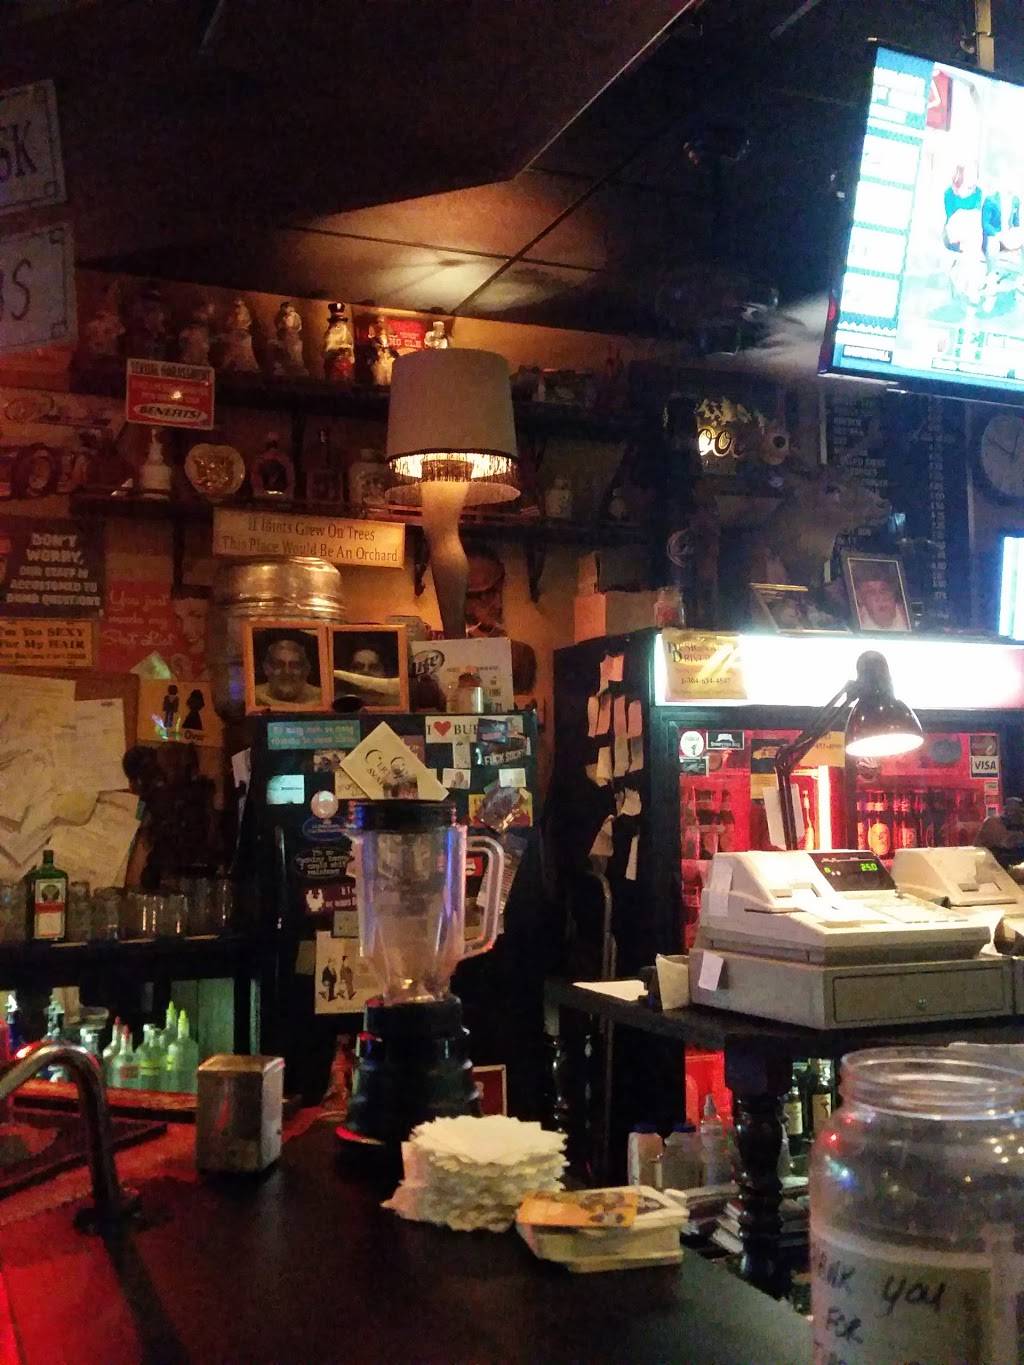 the inn between bar